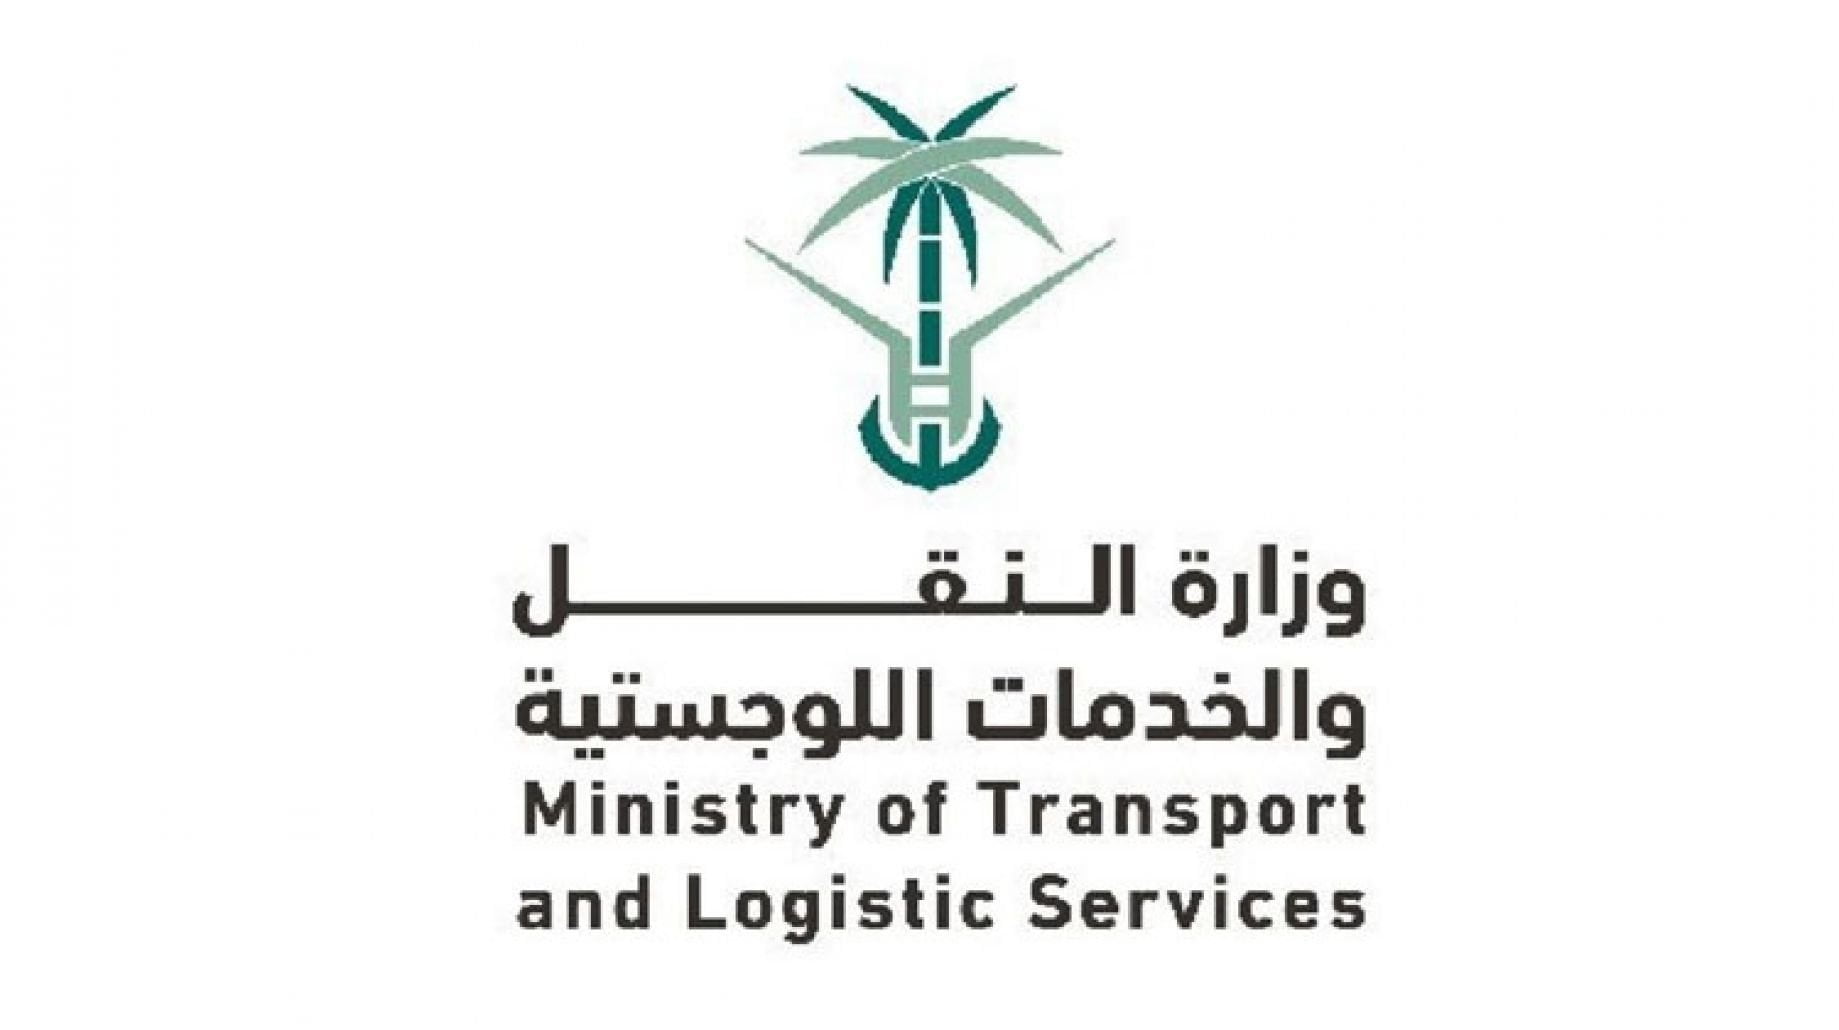 وزارة النقل والخدمات اللوجستية توظيف